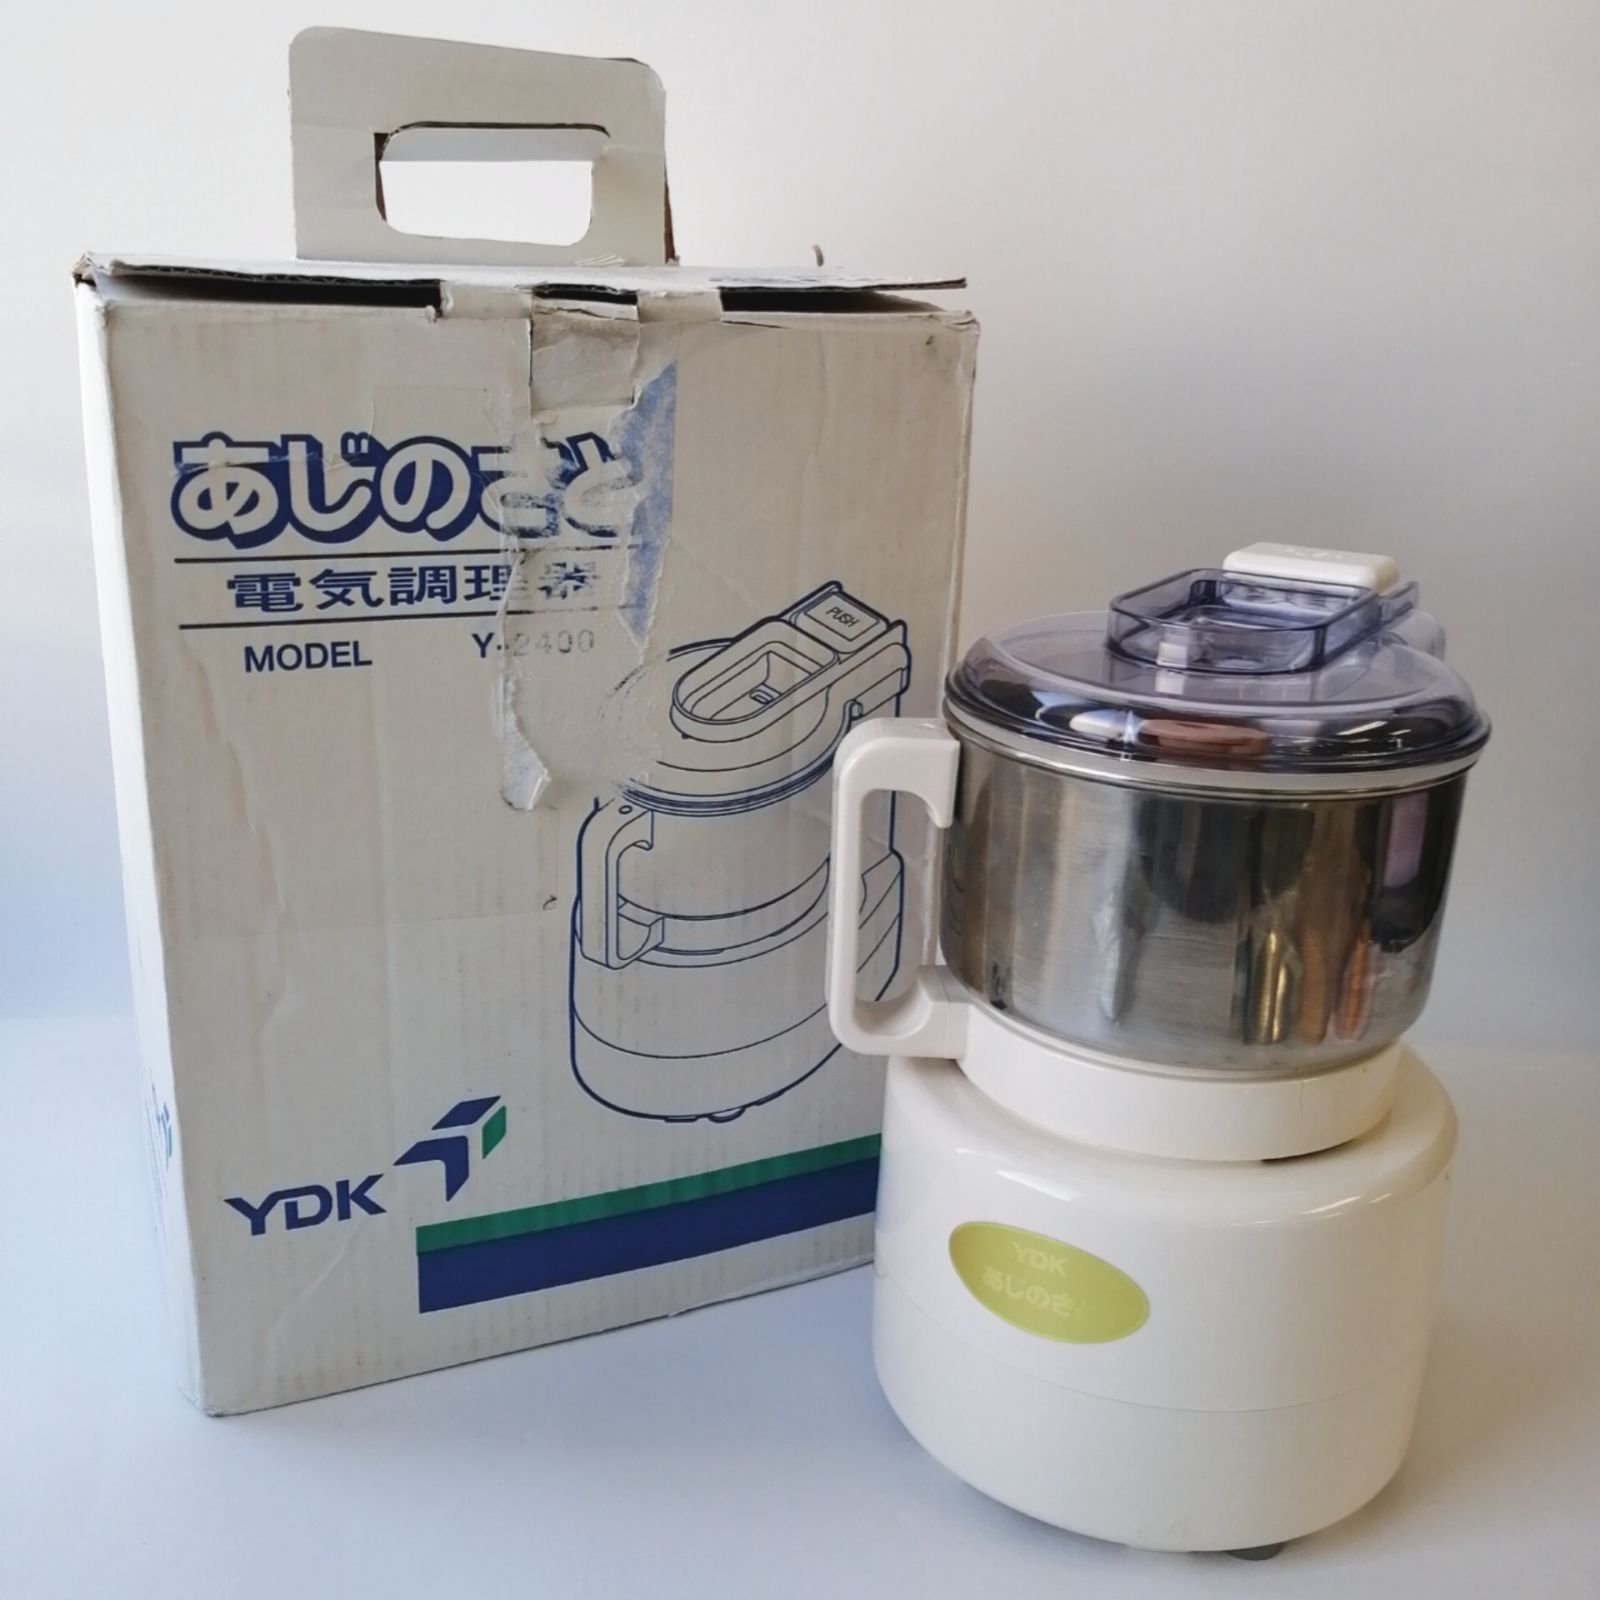 YDKあじのさと Y-2400 - キッチン家電